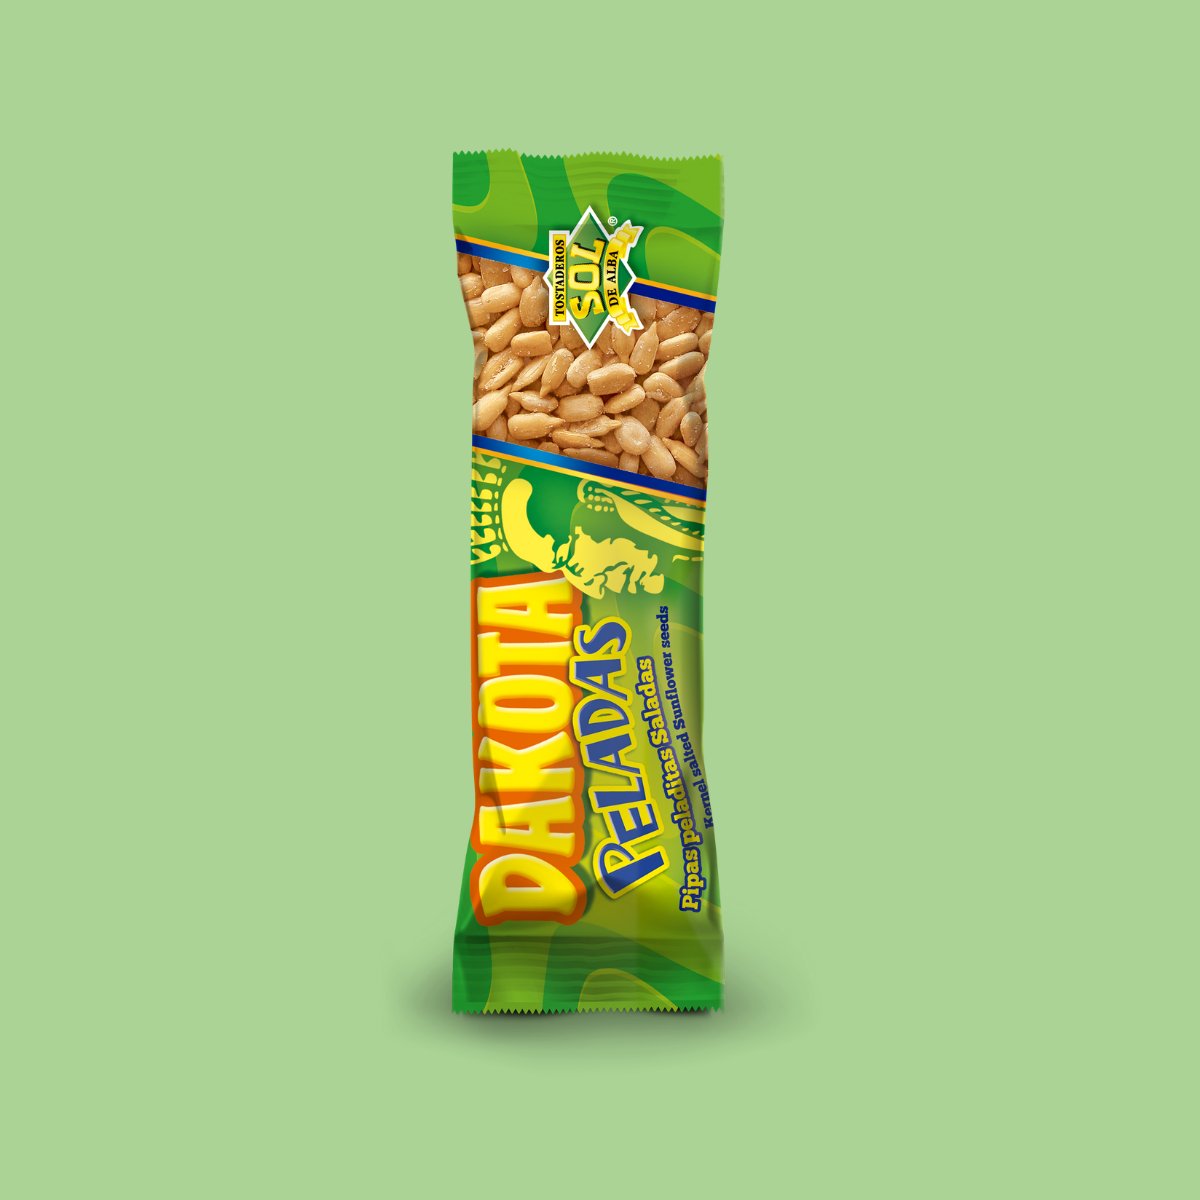 ¿Eres de los que prefieren las semillas de girasol sin cáscaras? 😉 ¡También hay unas Pipas Dakota para ti! 😋